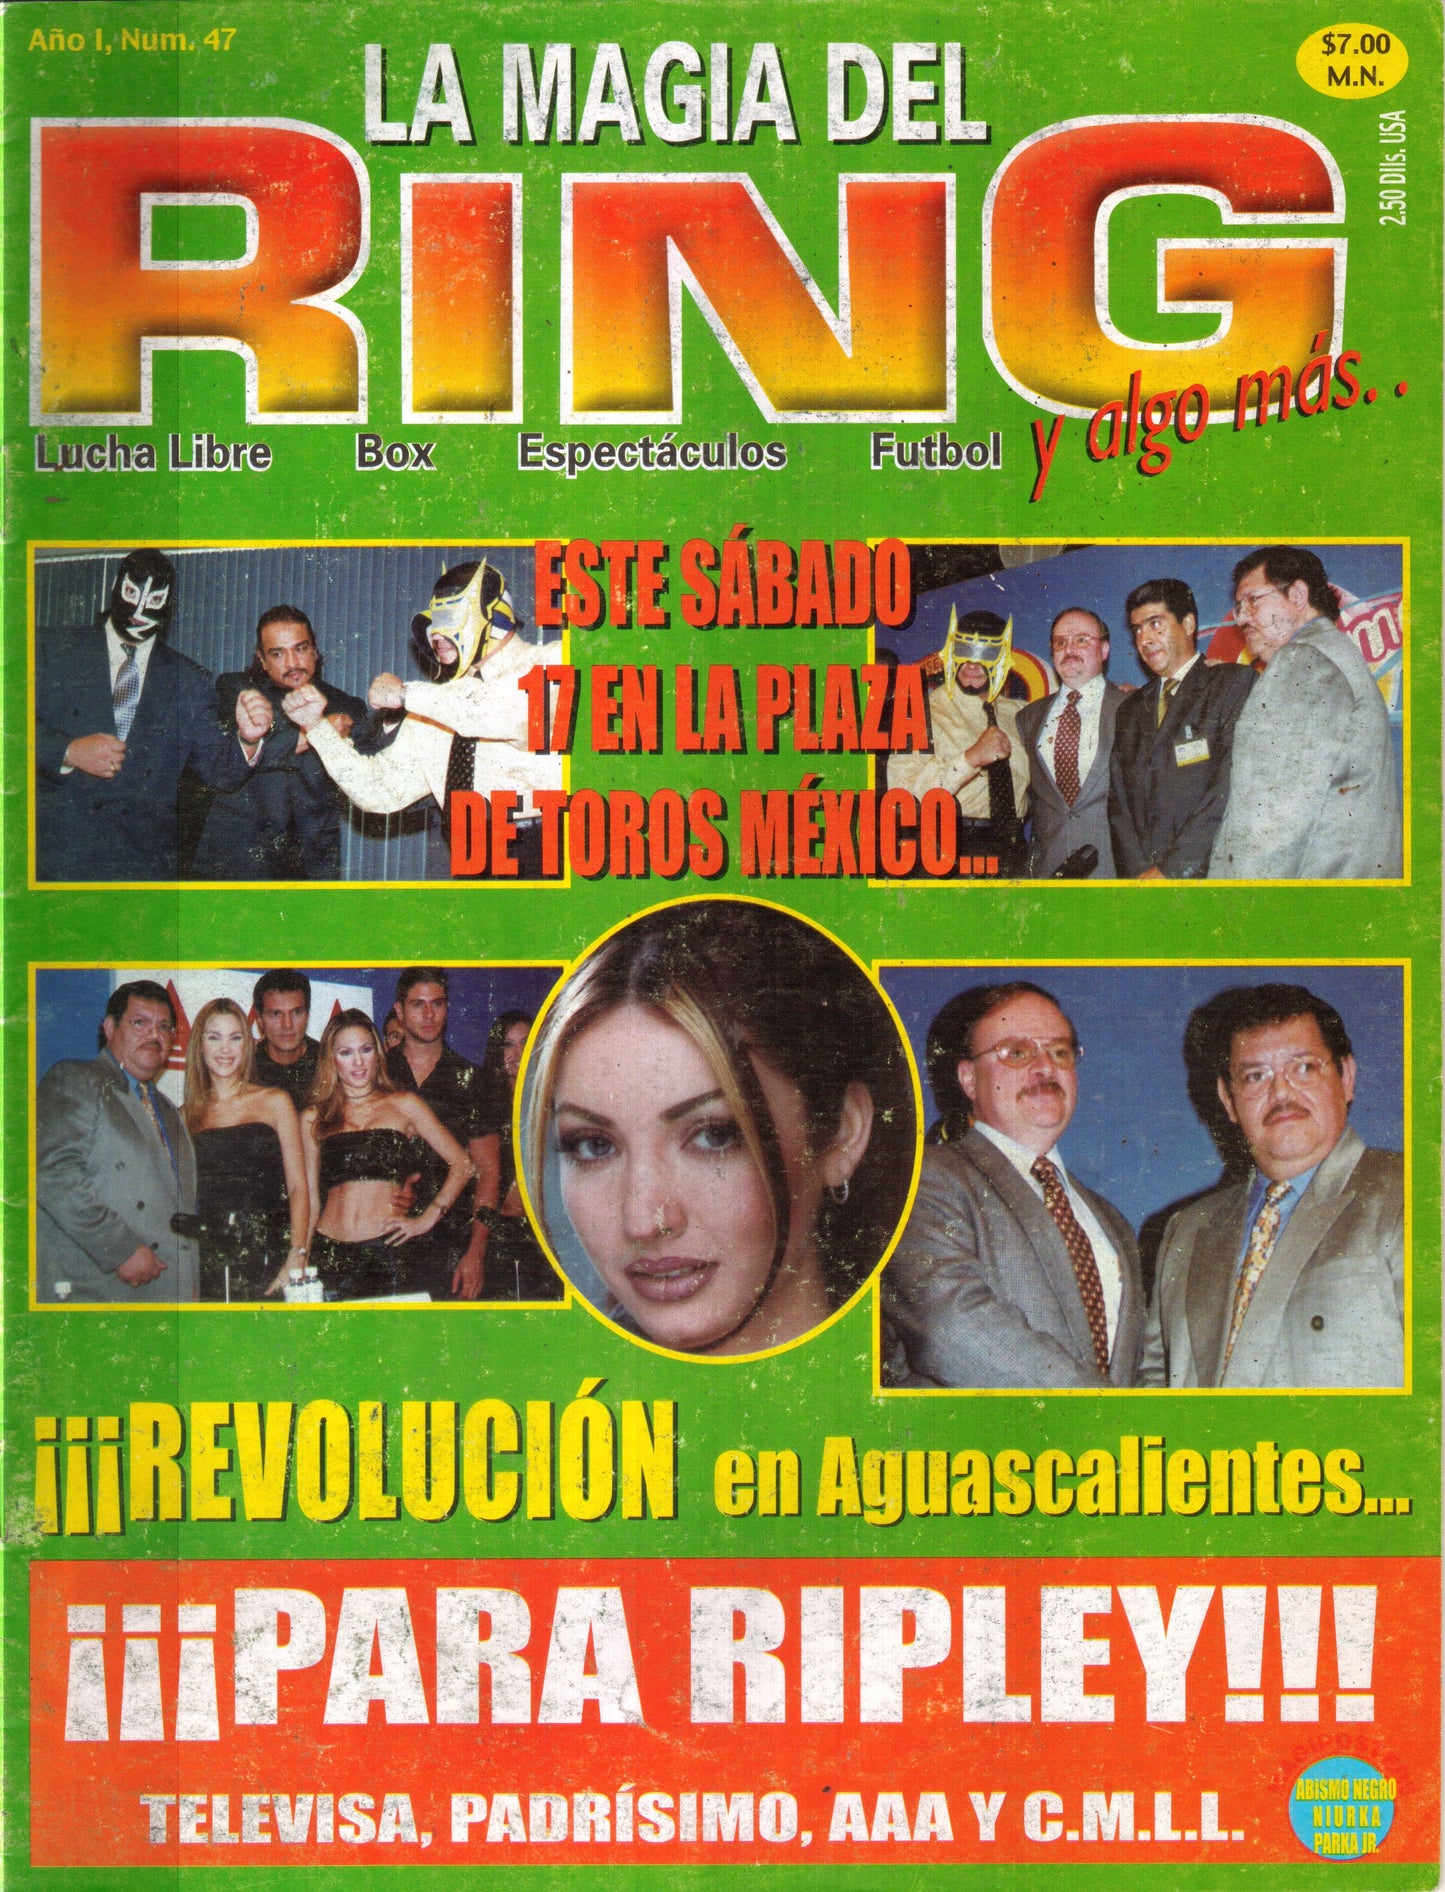 La Magia del Ring Volume 47